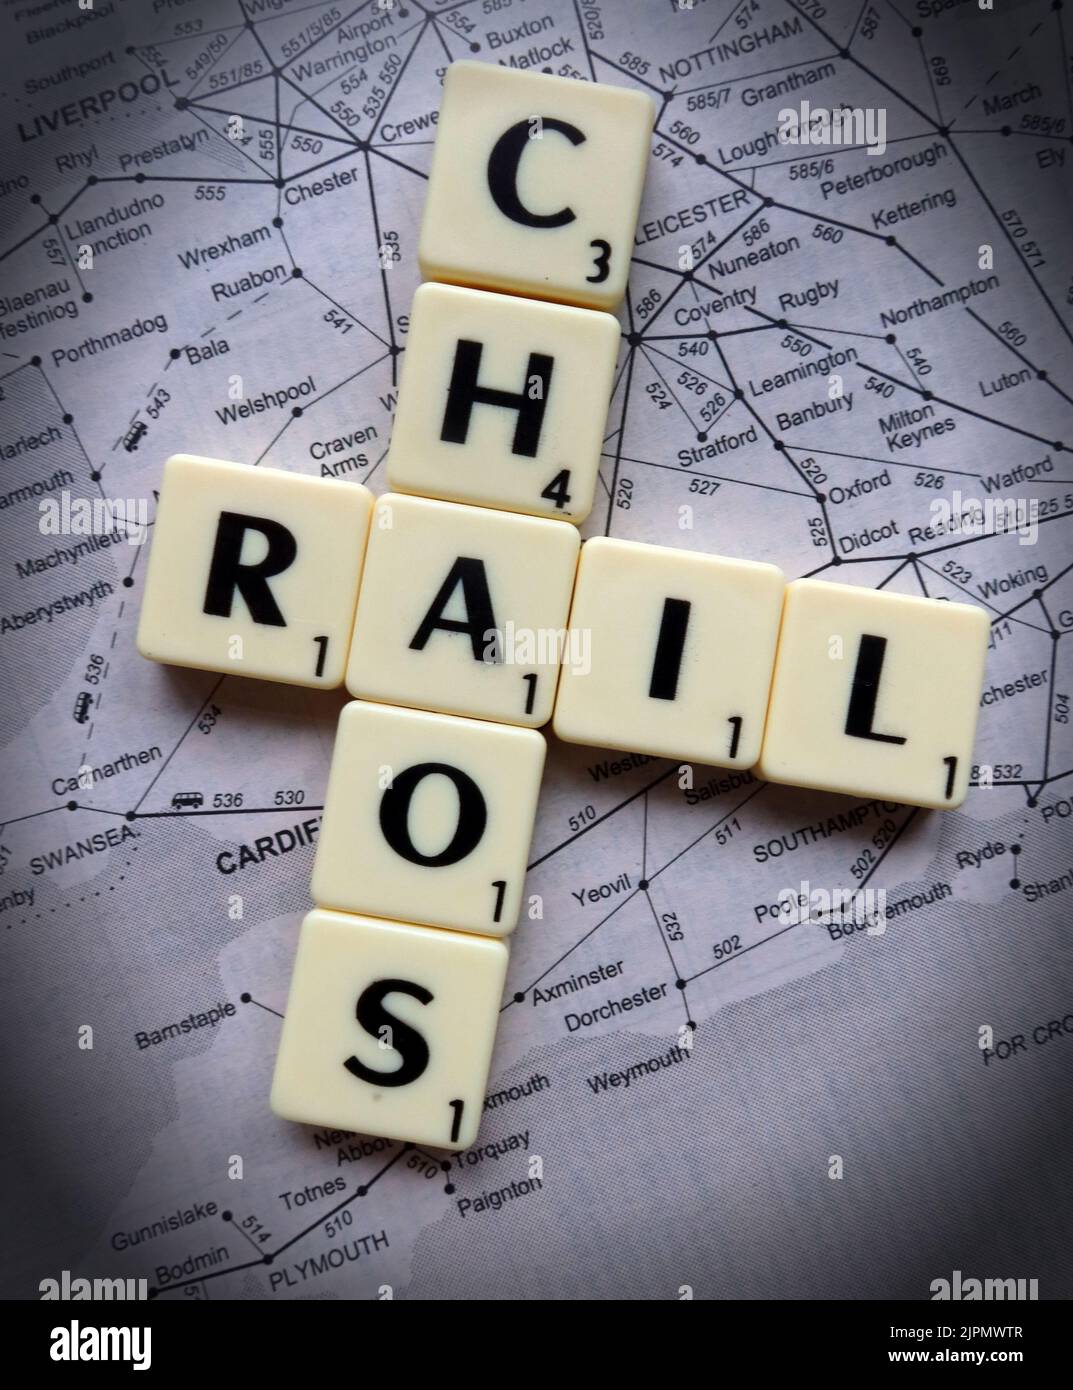 Il caos ferroviario causato da ritardi, cancellazioni, scioperi e azioni industriali, attraverso la rete britannica di trasporto ferroviario - RMT, ASLEF in lettere scrabble Foto Stock